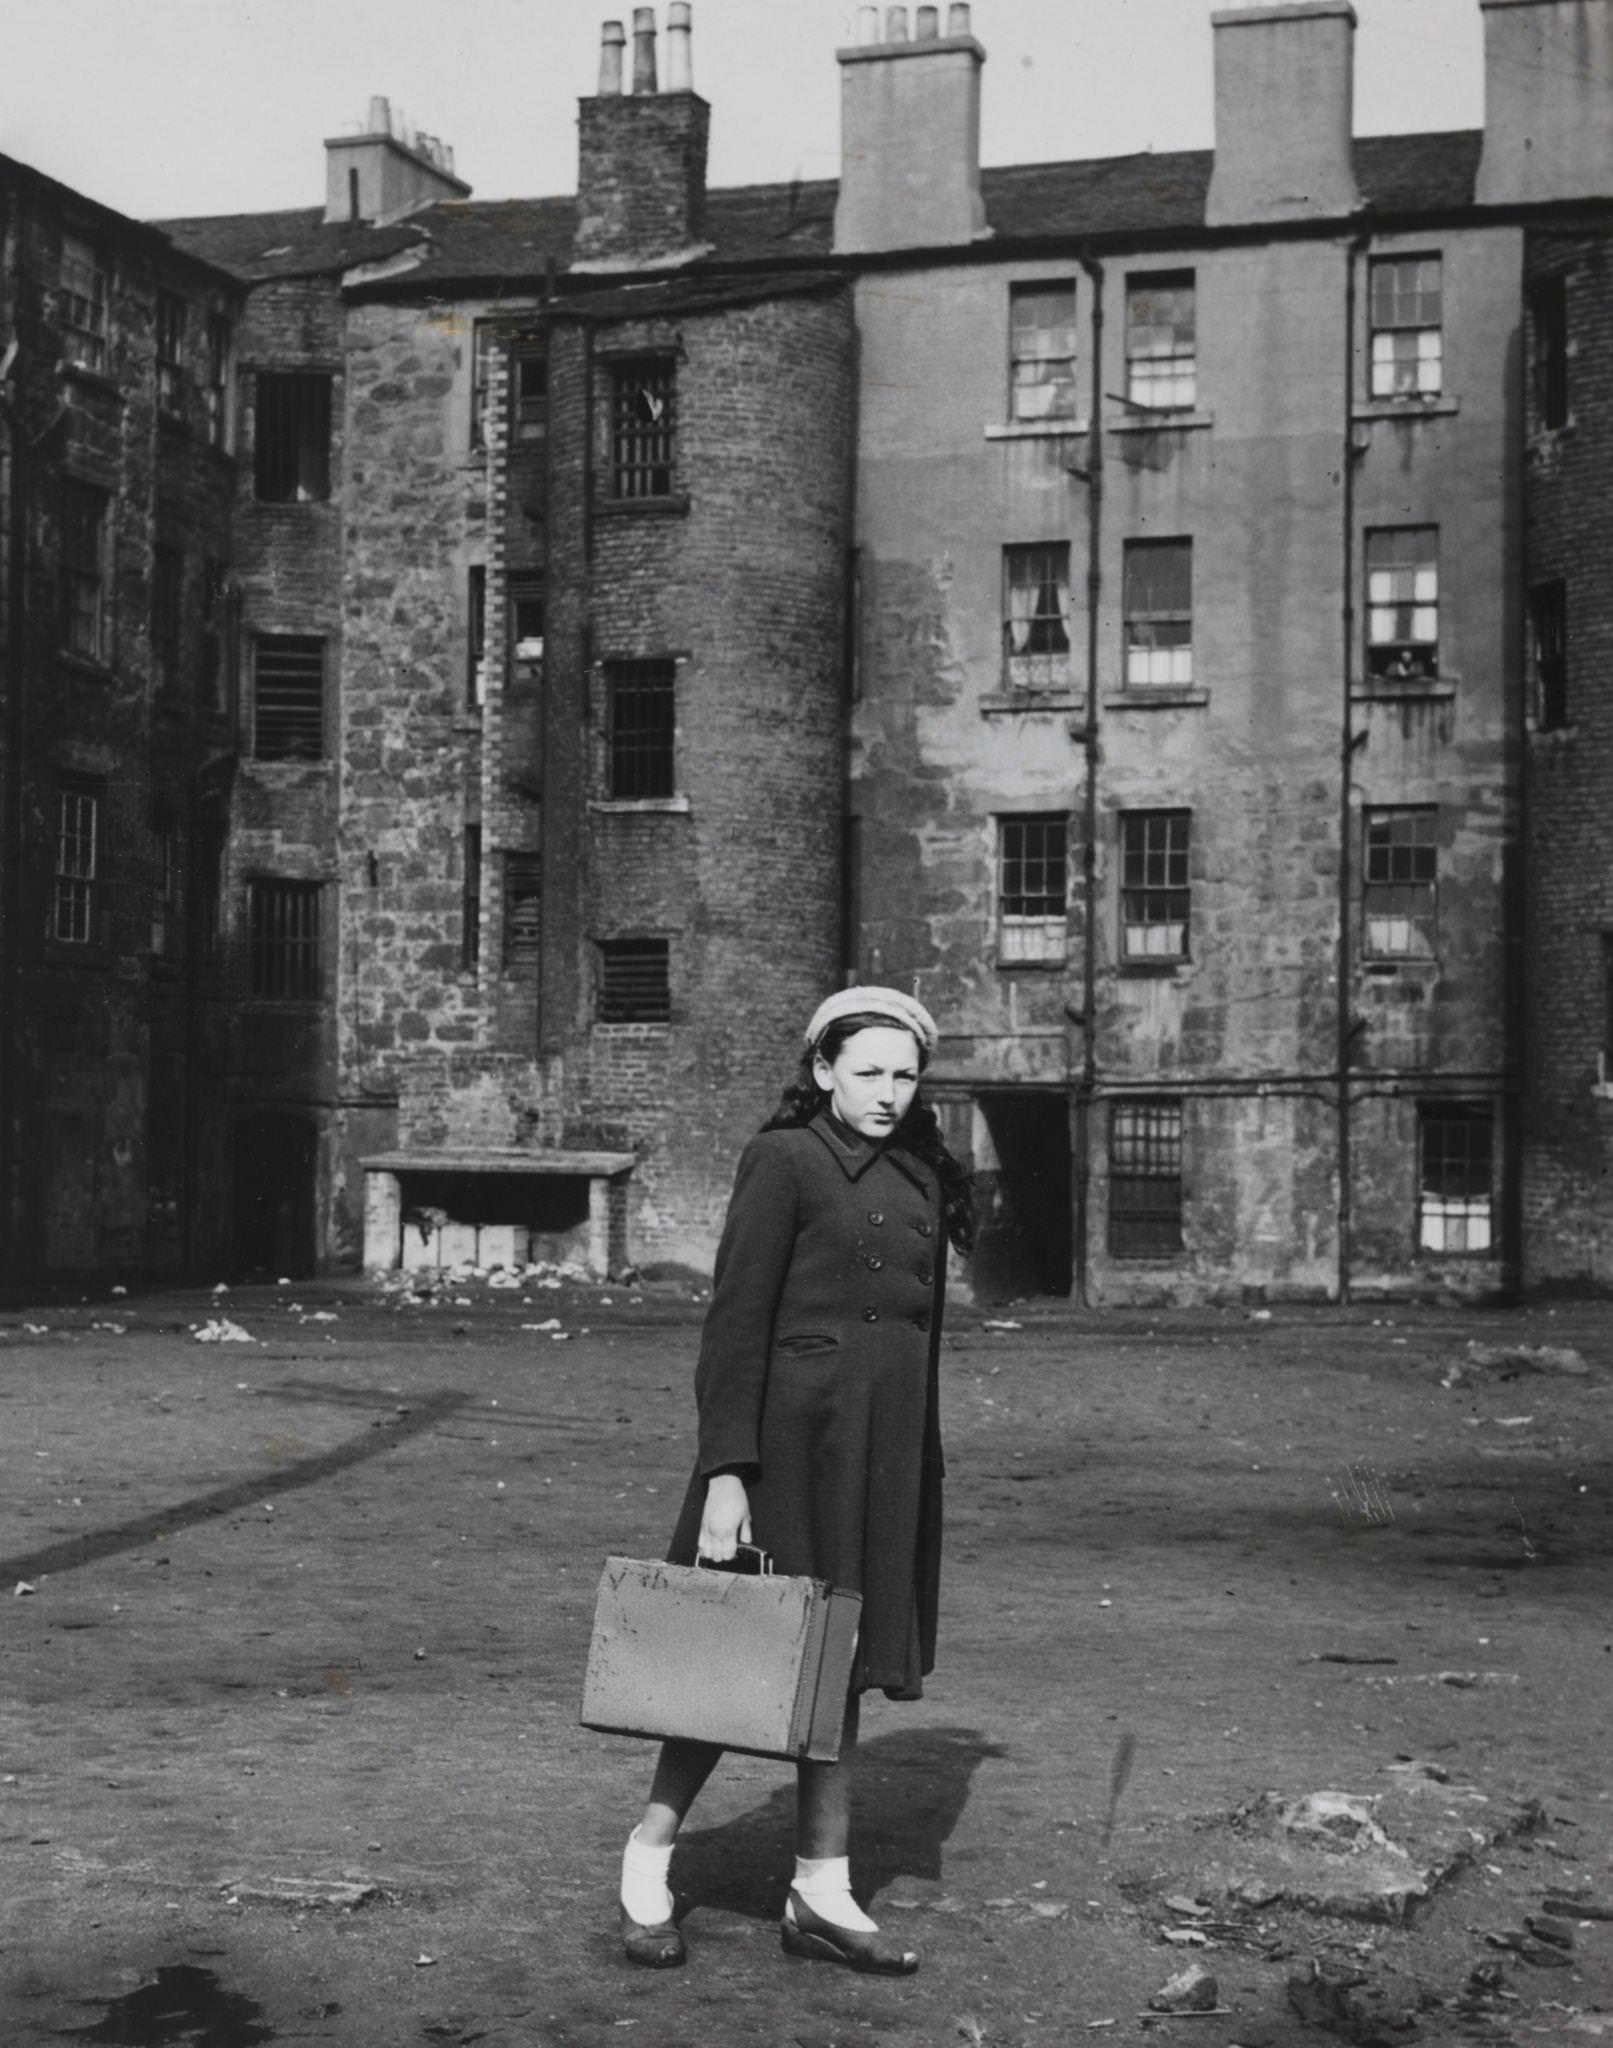 Matilda Szlapikas in her slum surrounding, 1952